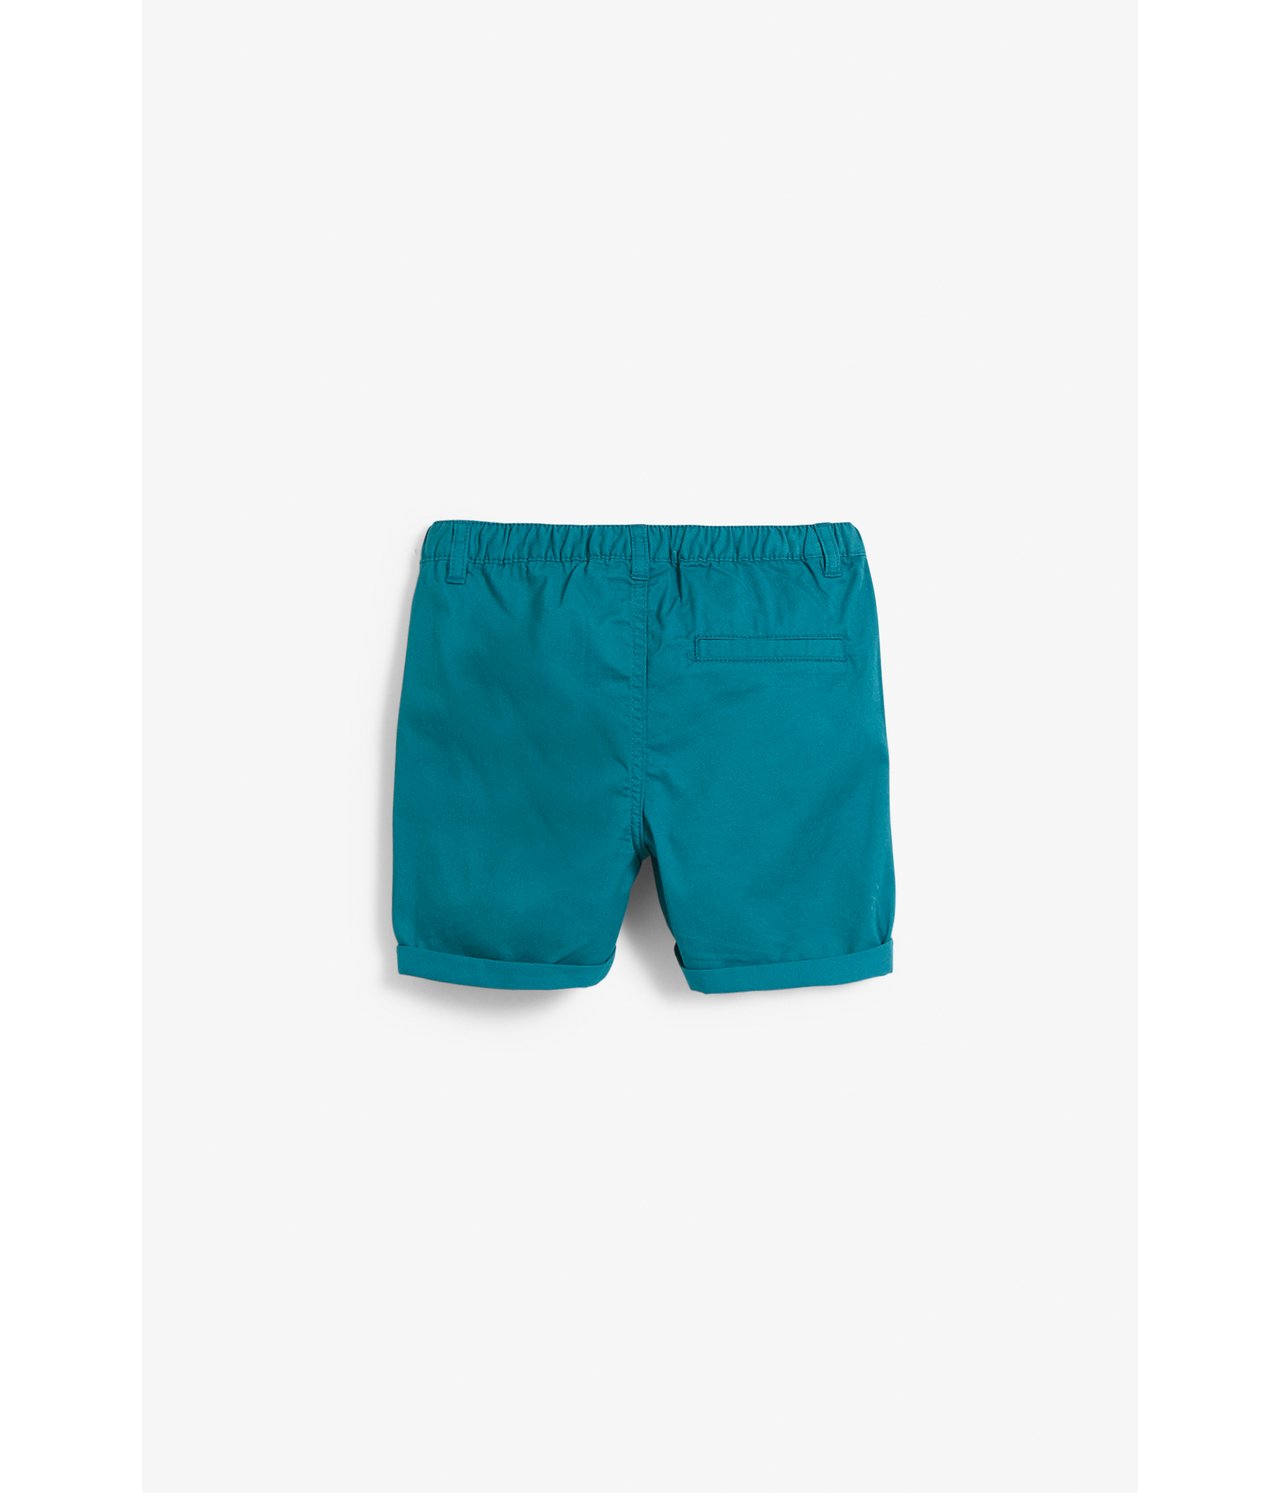 Vevd shorts - Grønn - 6